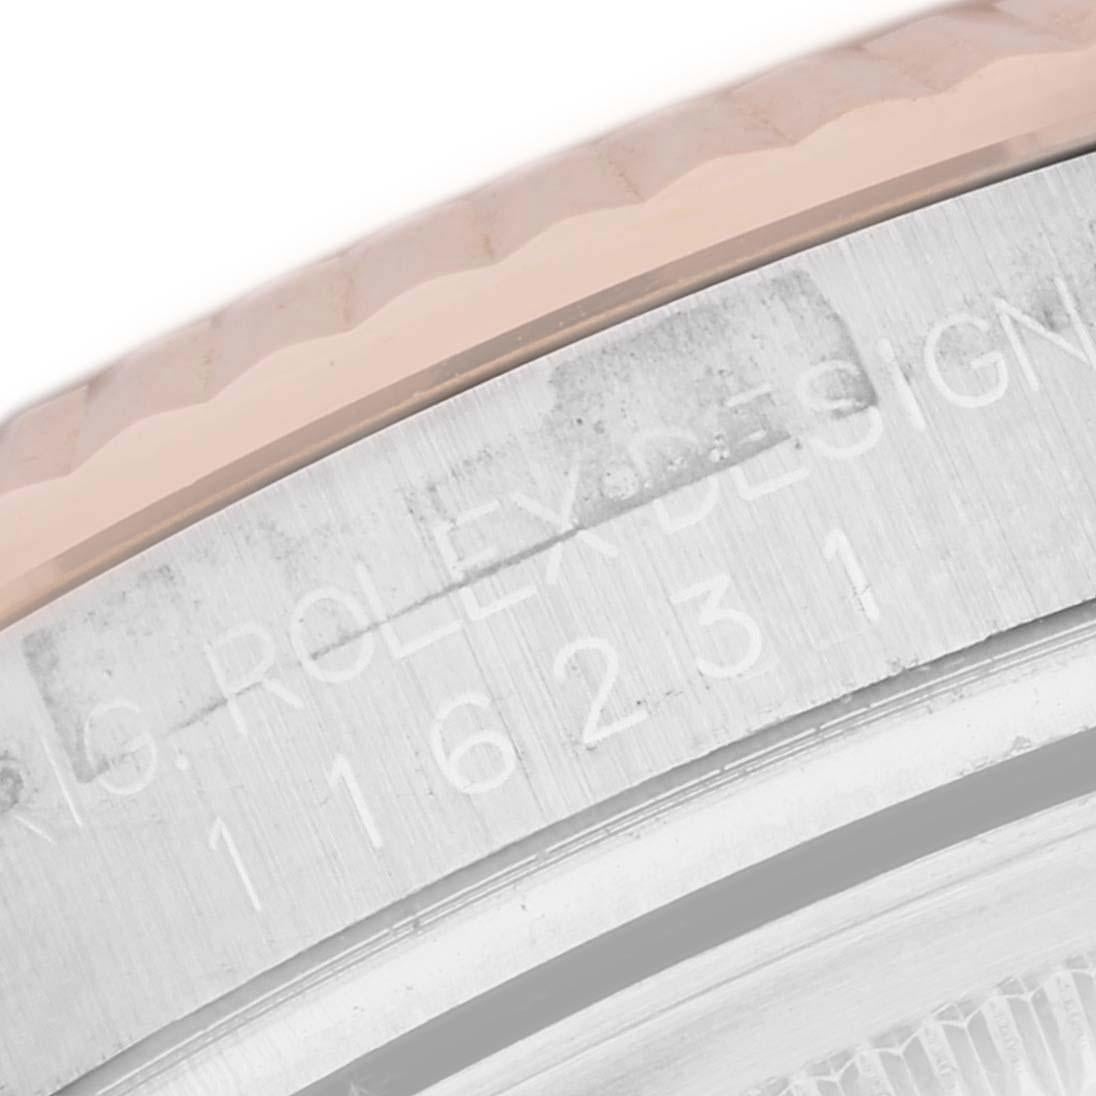 Rolex Datejust Steel Rose Gold Pink Dial Mens Watch 116231 Box Papers. Mouvement automatique à remontage automatique, officiellement certifié chronomètre. Boîtier en acier inoxydable et en or Everose 18 carats de 36 mm de diamètre. Logo Rolex sur